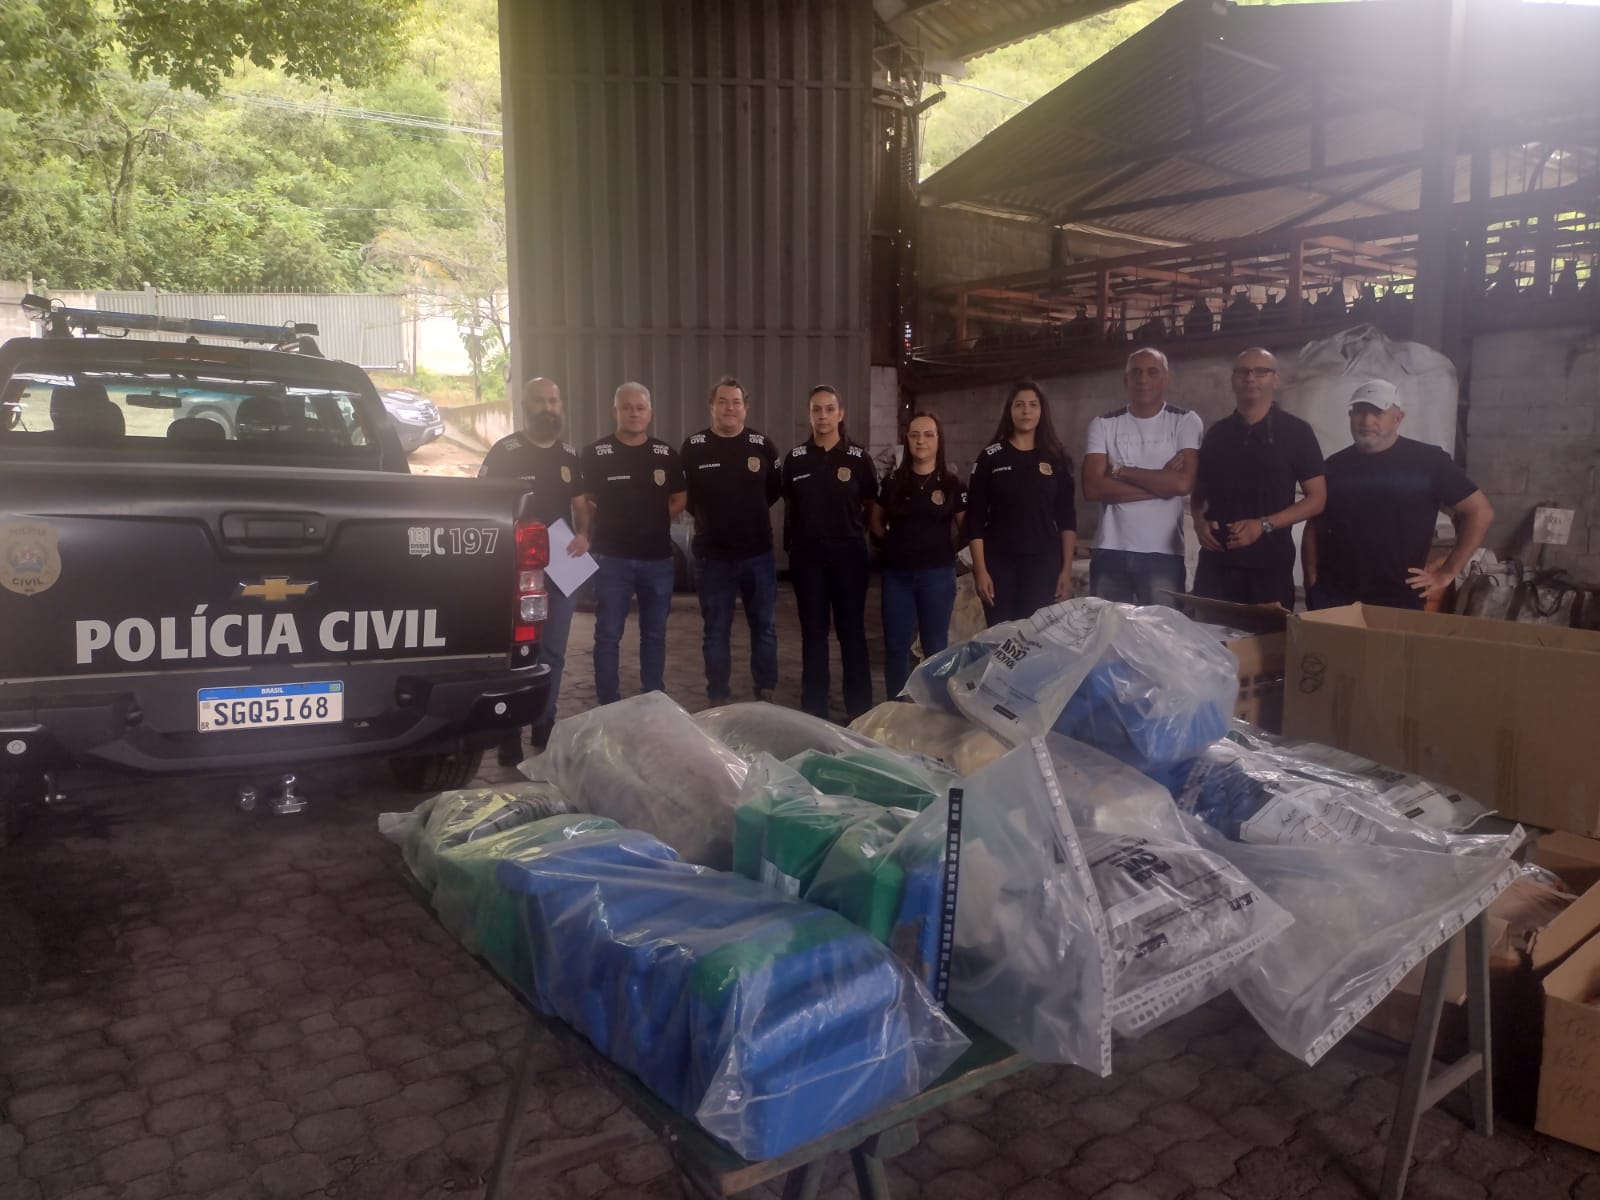 PCMG incinera mais de 150 kg de drogas em São João del-Rei